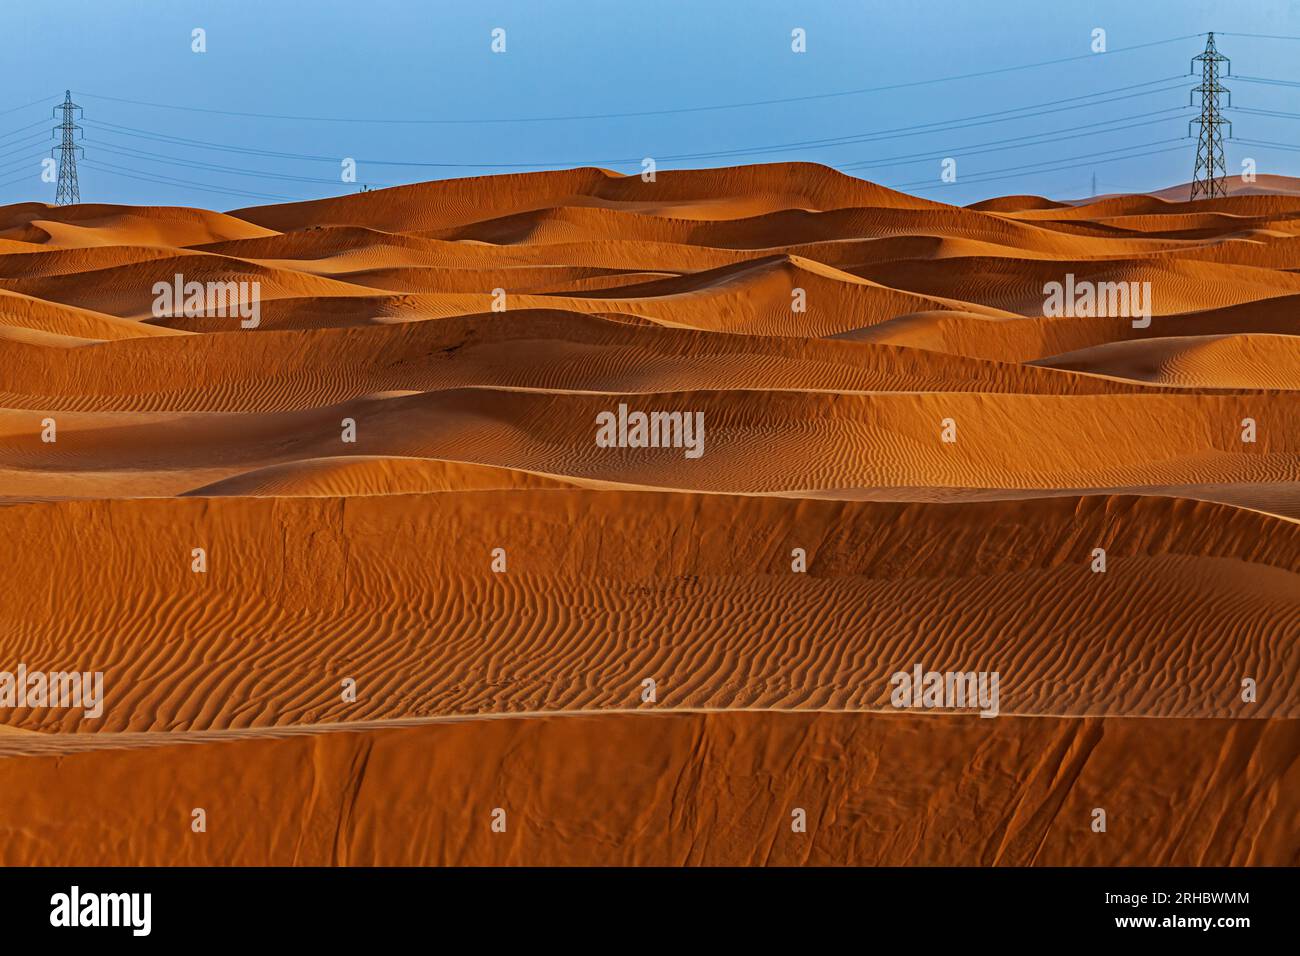 Strommasten inmitten orangefarbener Sanddünen in der Wüste, Saudi-Arabien Stockfoto